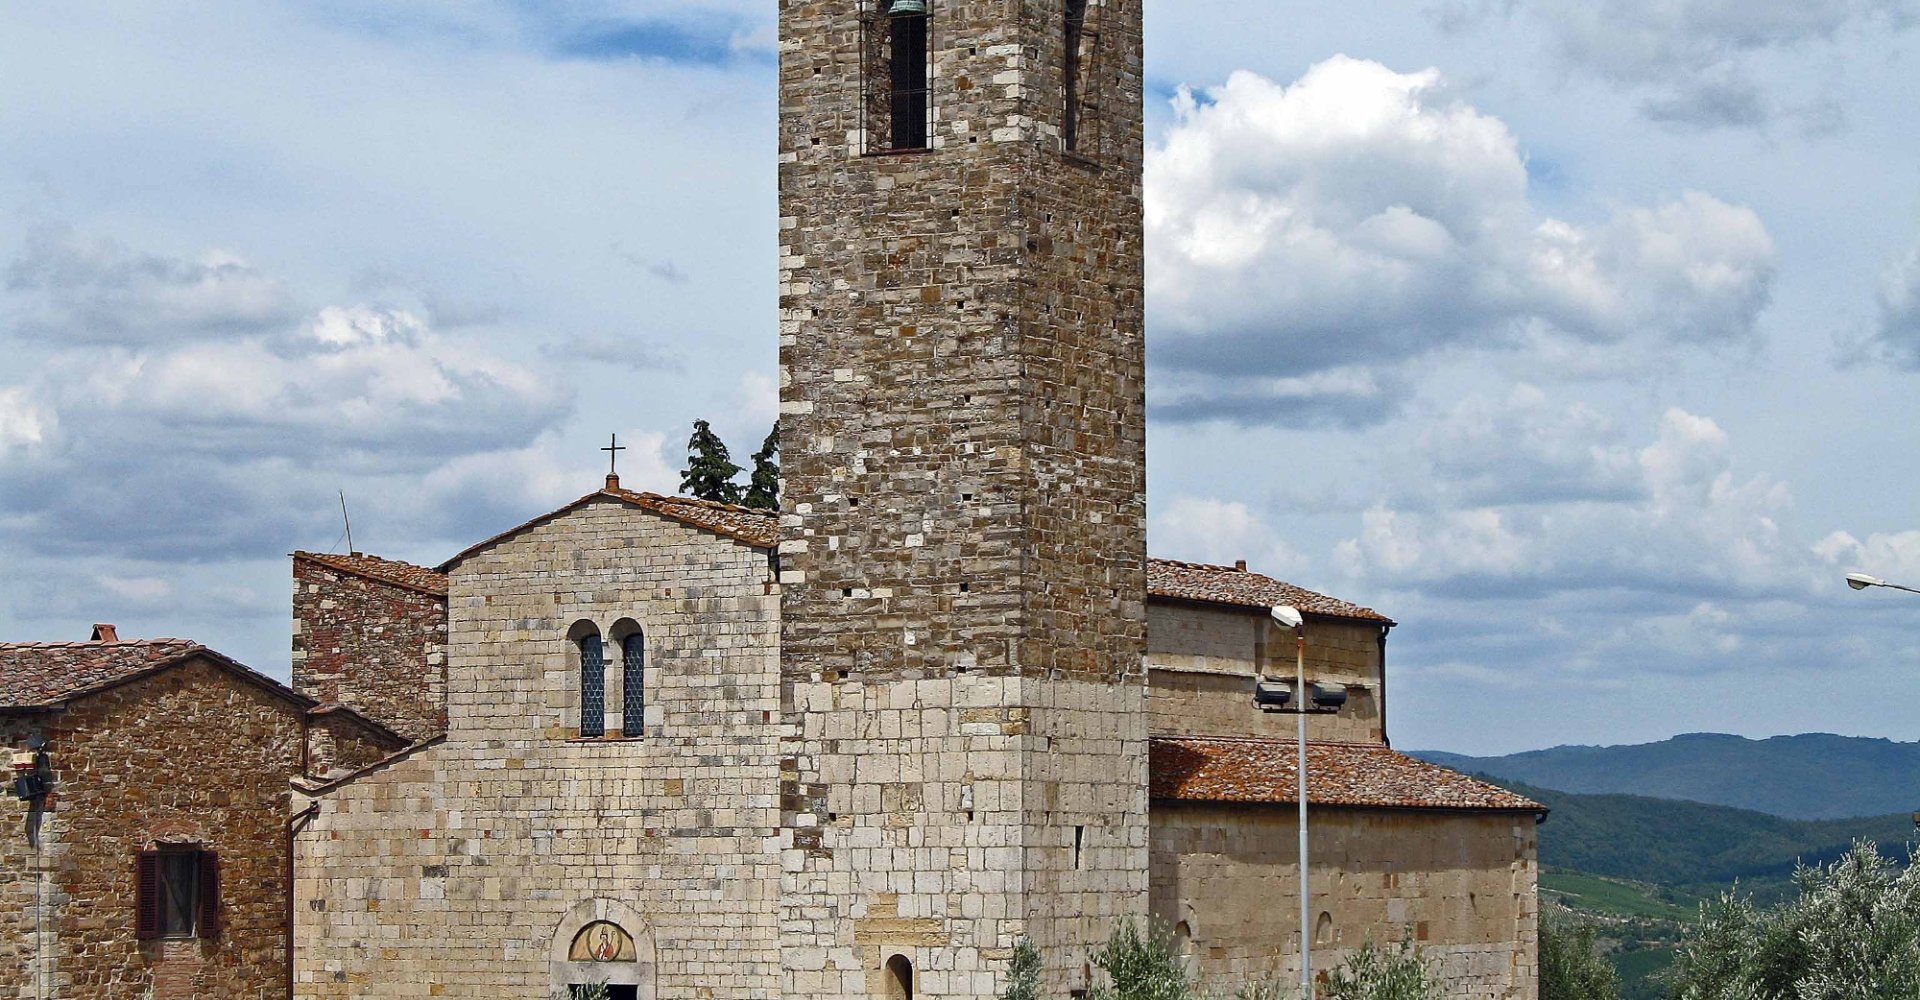 Parish church of San Donato in Poggio